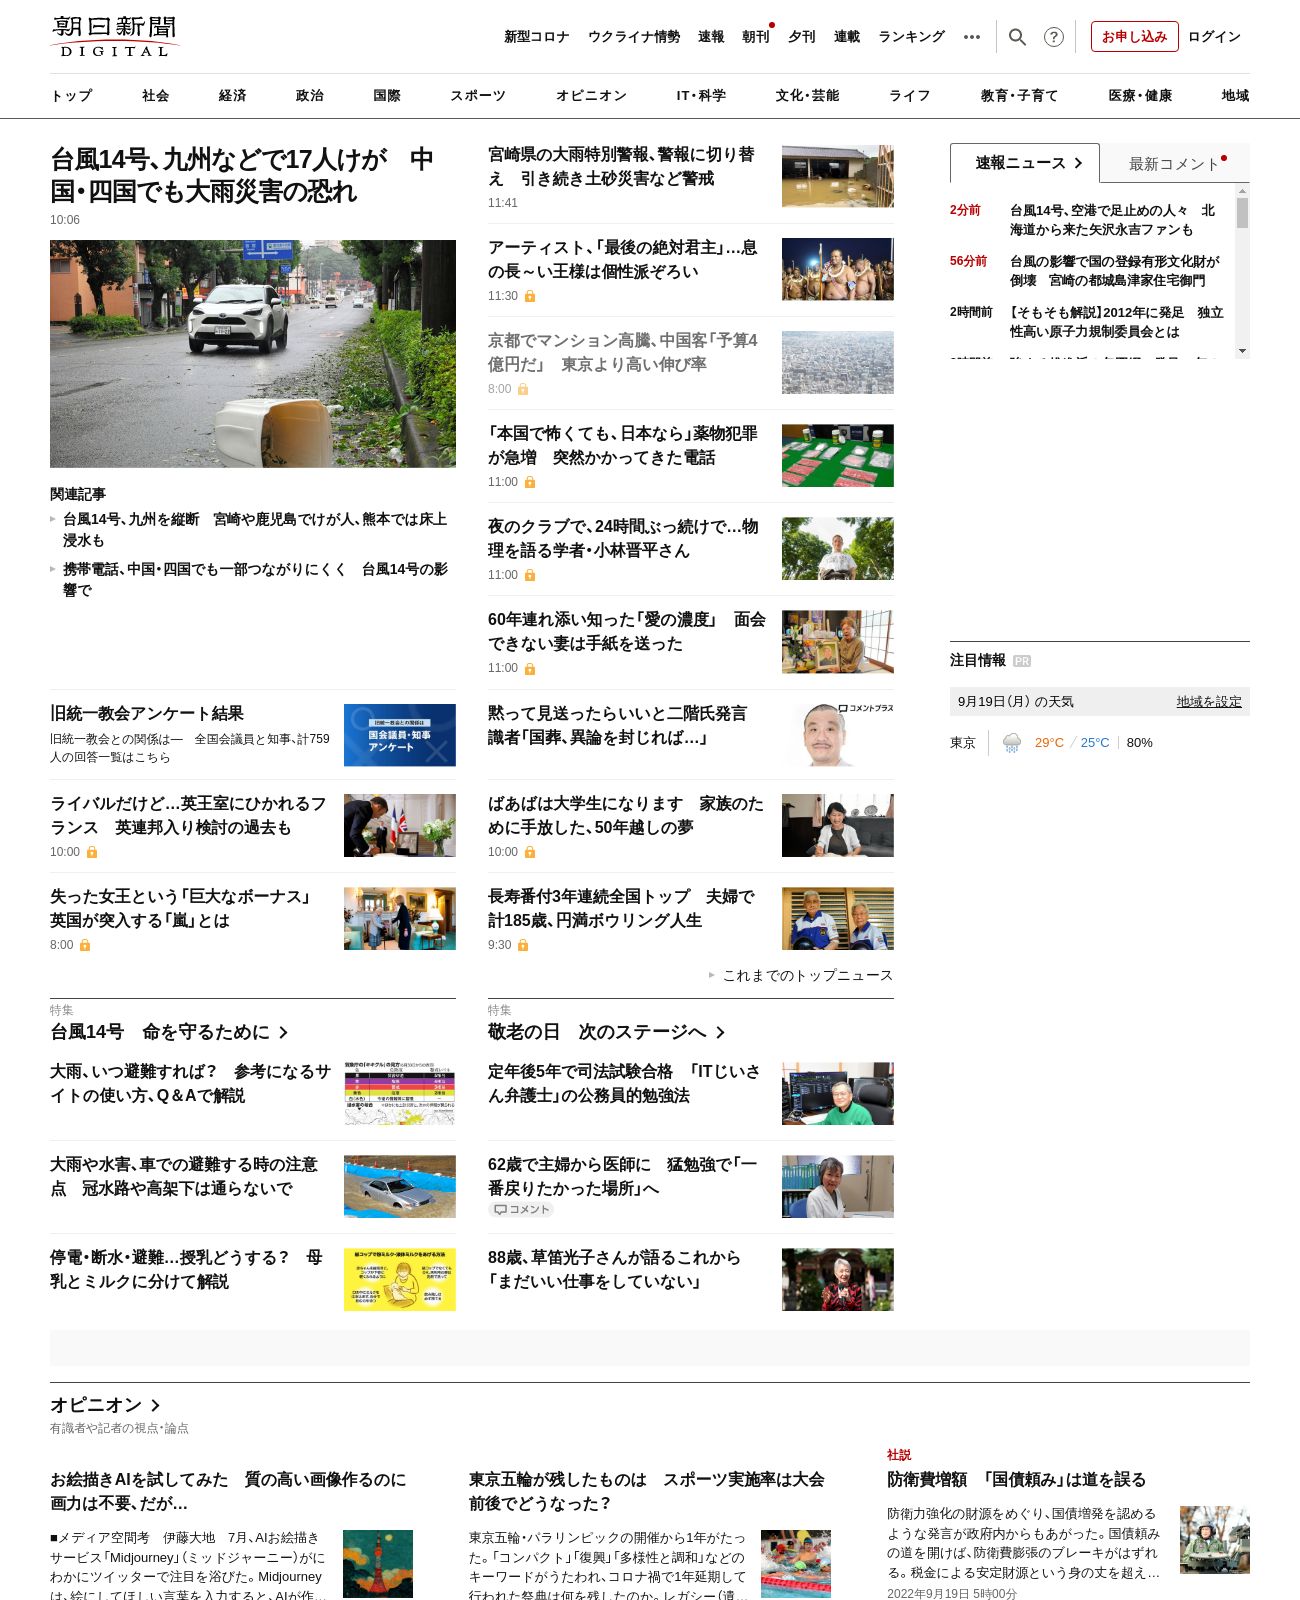 Asahi Shimbun at 2022-09-19 12:40:34+09:00 local time